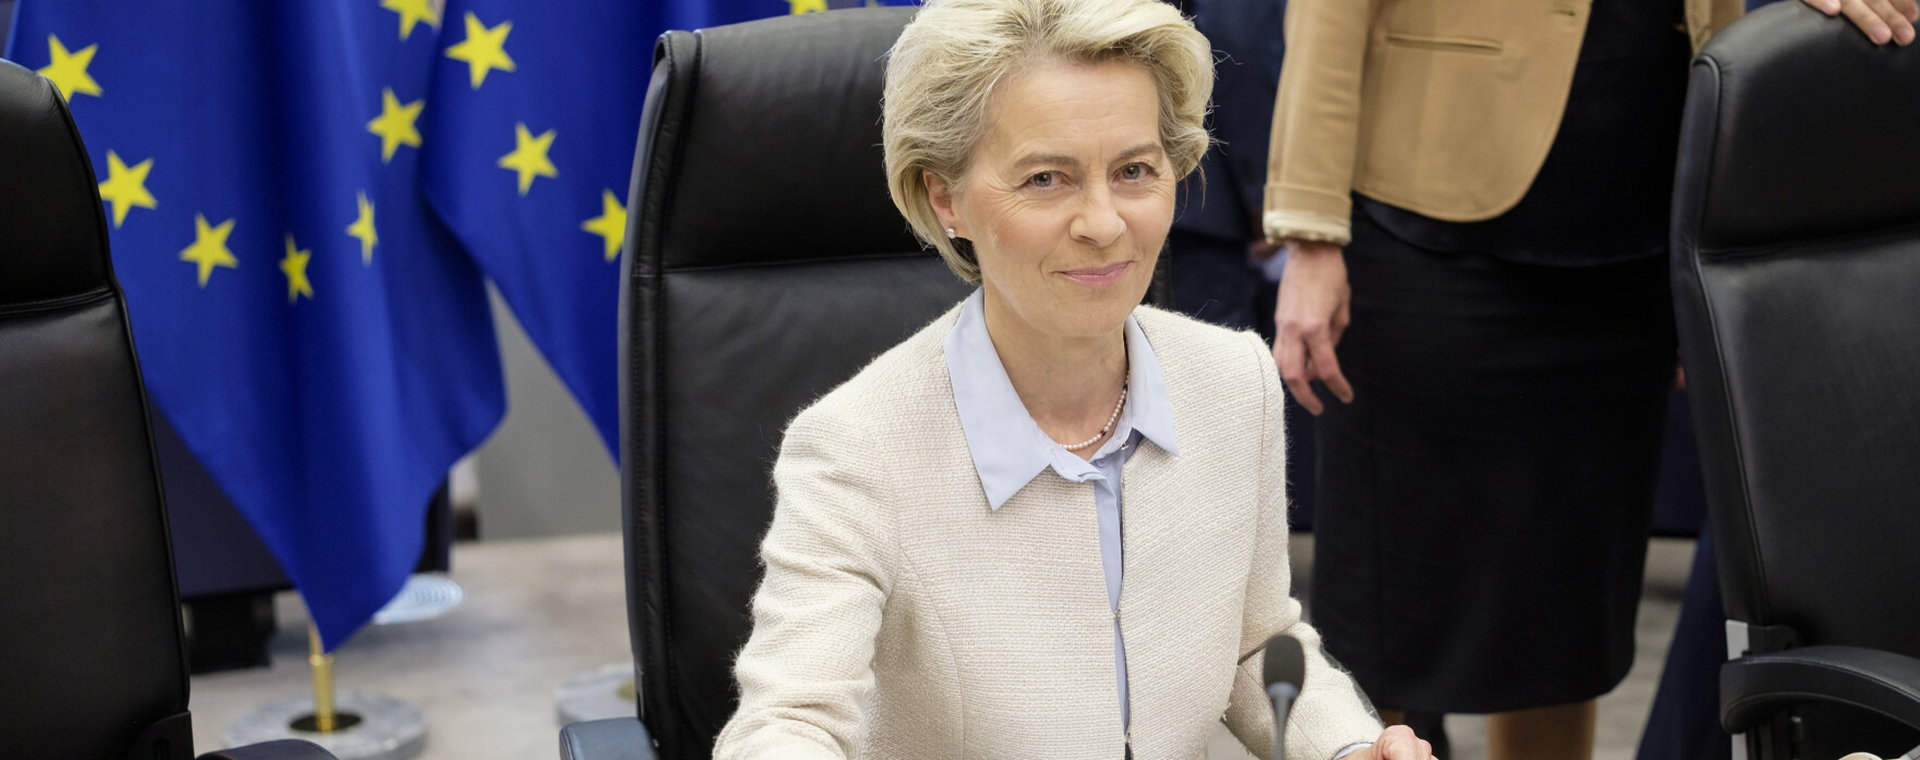 Przewodnicząca Komisji Europejskiej, Ursula von der Leyen